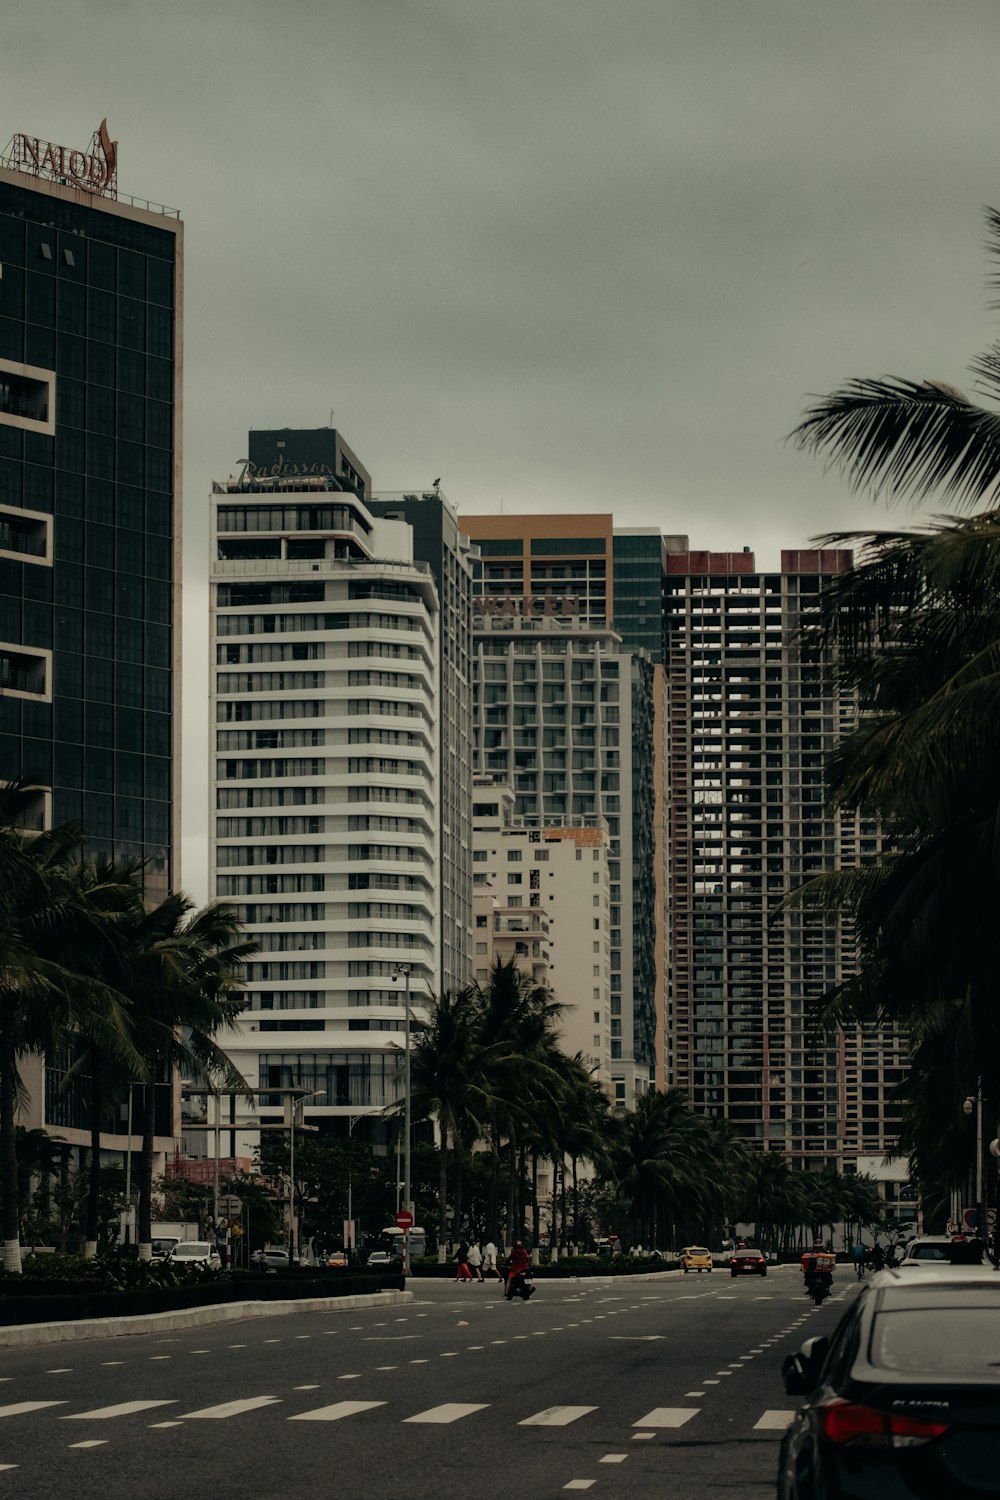 Une rue de la ville bordée de grands immeubles et de palmiers